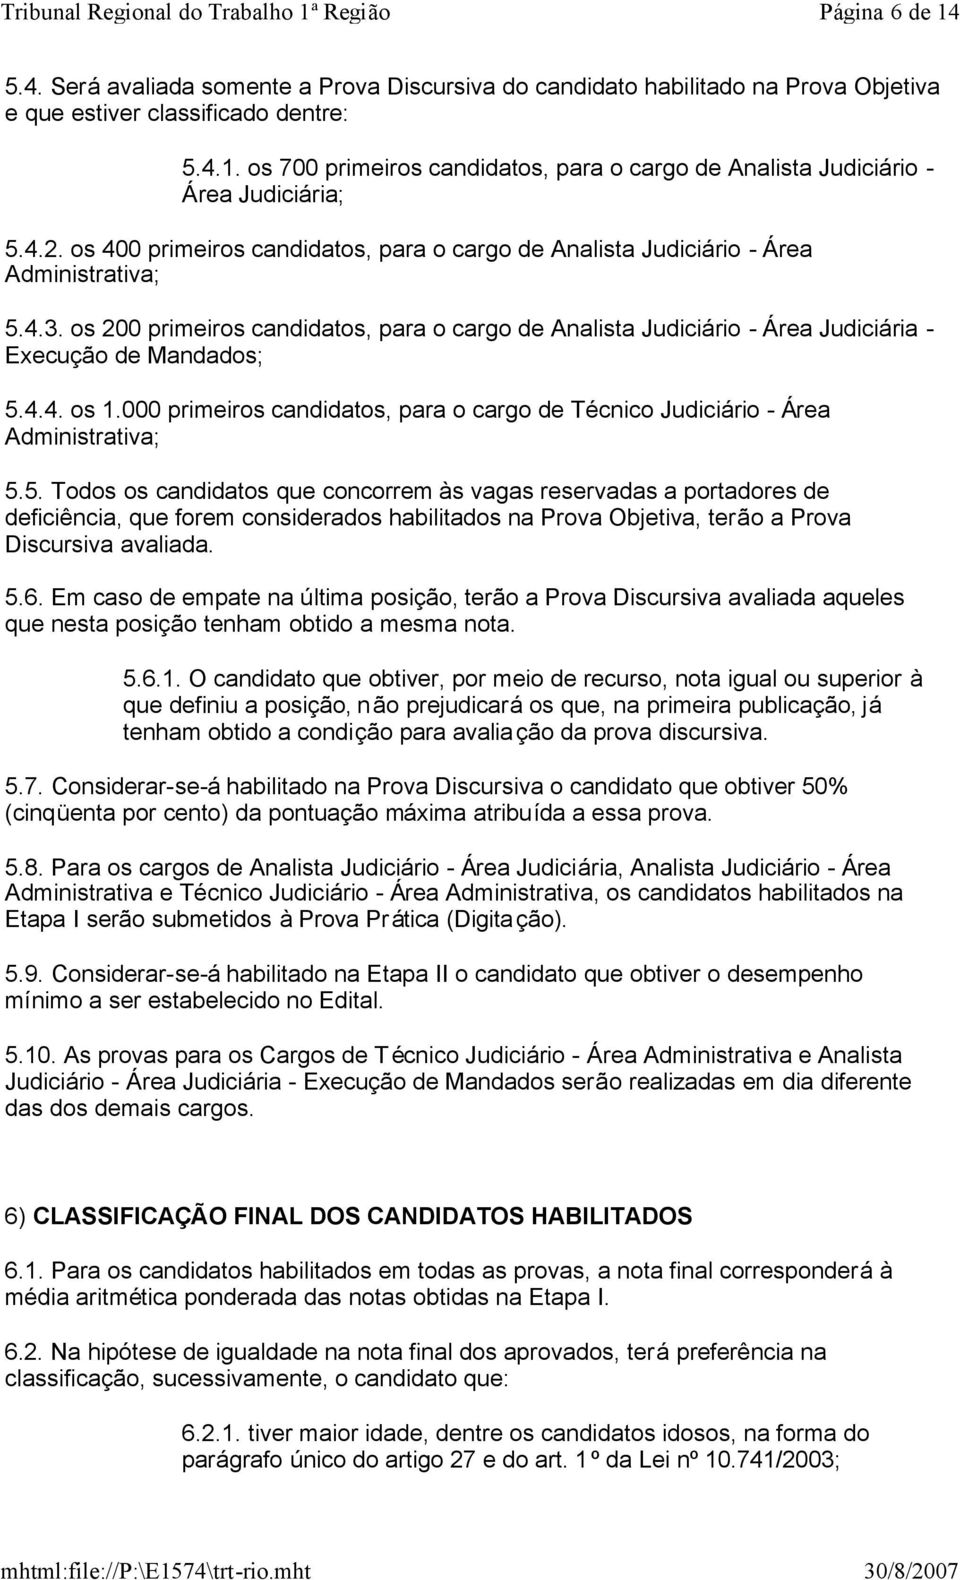 os 200 primeiros candidatos, para o cargo de Analista Judiciário - Área Judiciária - Execução de Mandados; 5.4.4. os 1.